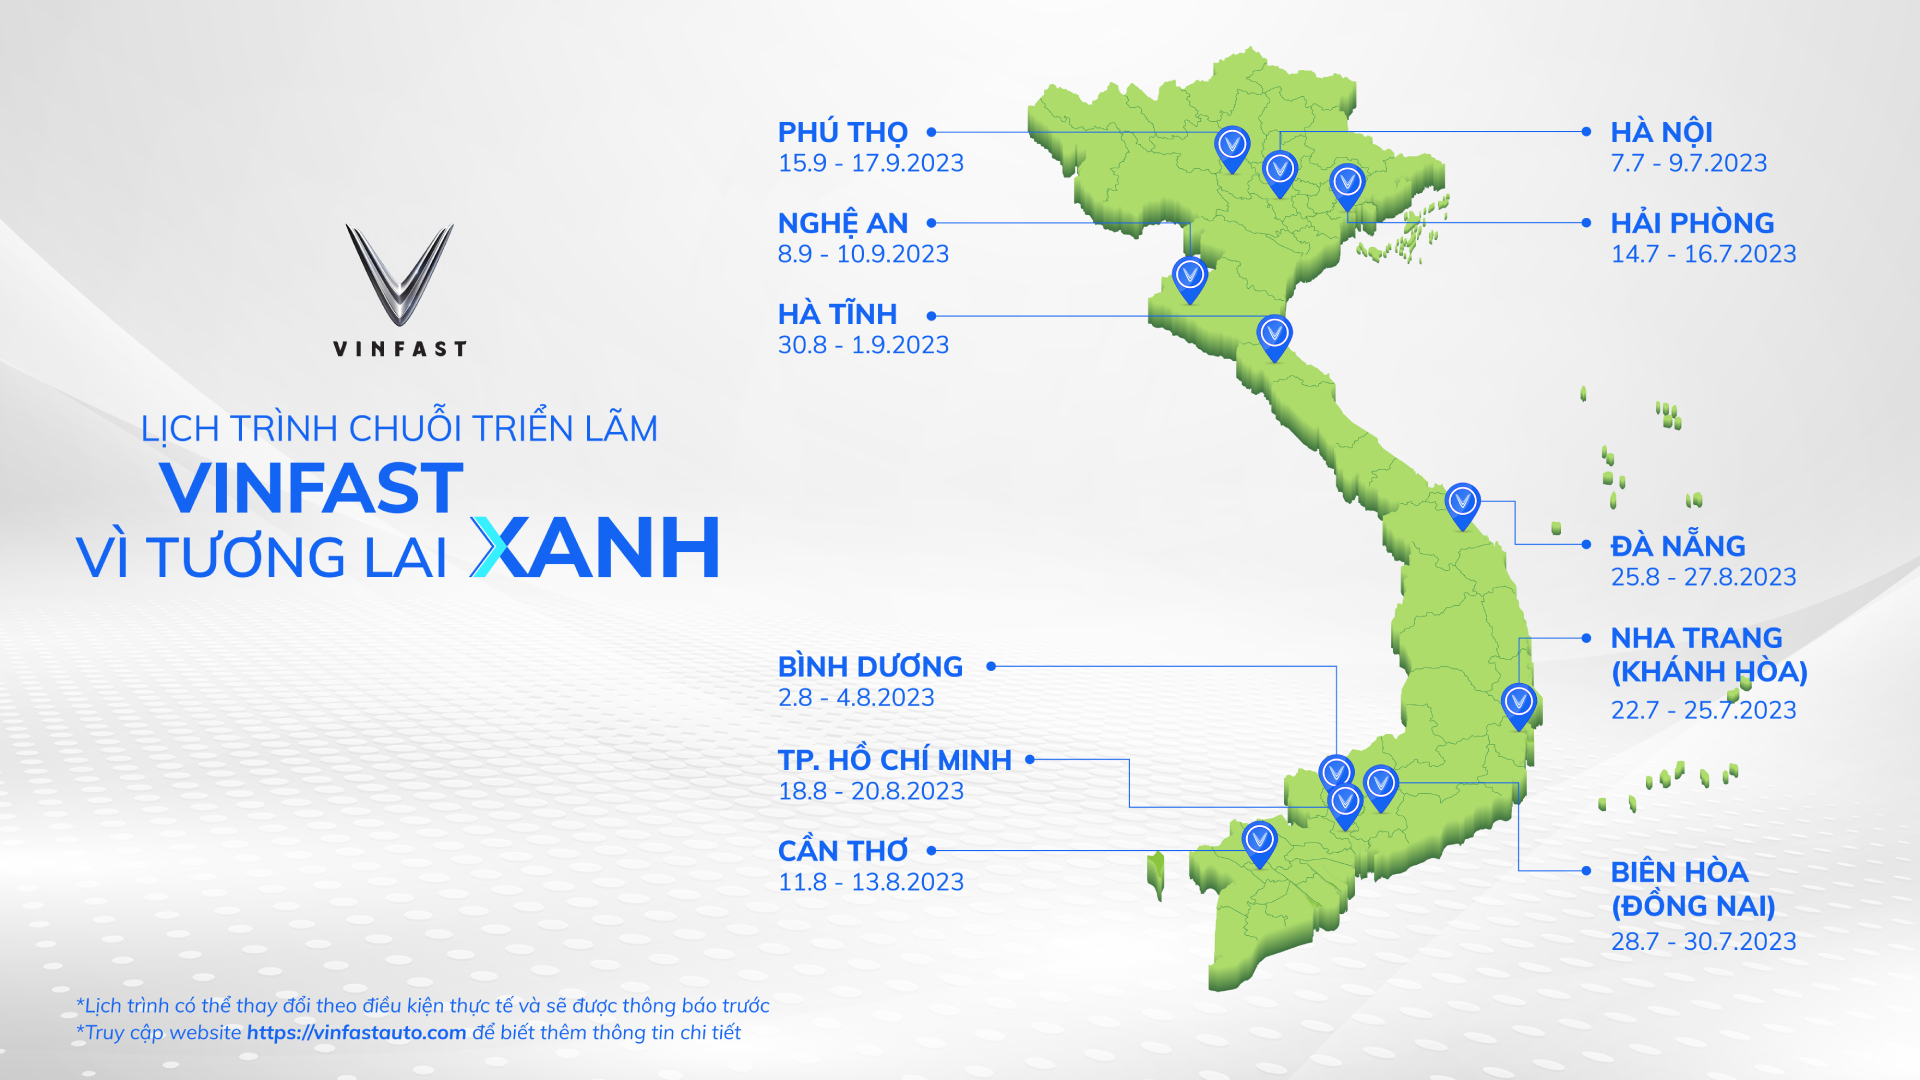 Sau 3 ngày triển lãm tại Hà Nội, “VinFast - Vì tương lai xanh” sẽ tiếp tục hành trình đến với 10 tỉnh, thành phố lớn trên toàn quốc với lịch trình dự kiến như sau (có thể thay đổi theo điều kiện thực tế và sẽ được VinFast thông báo trước).